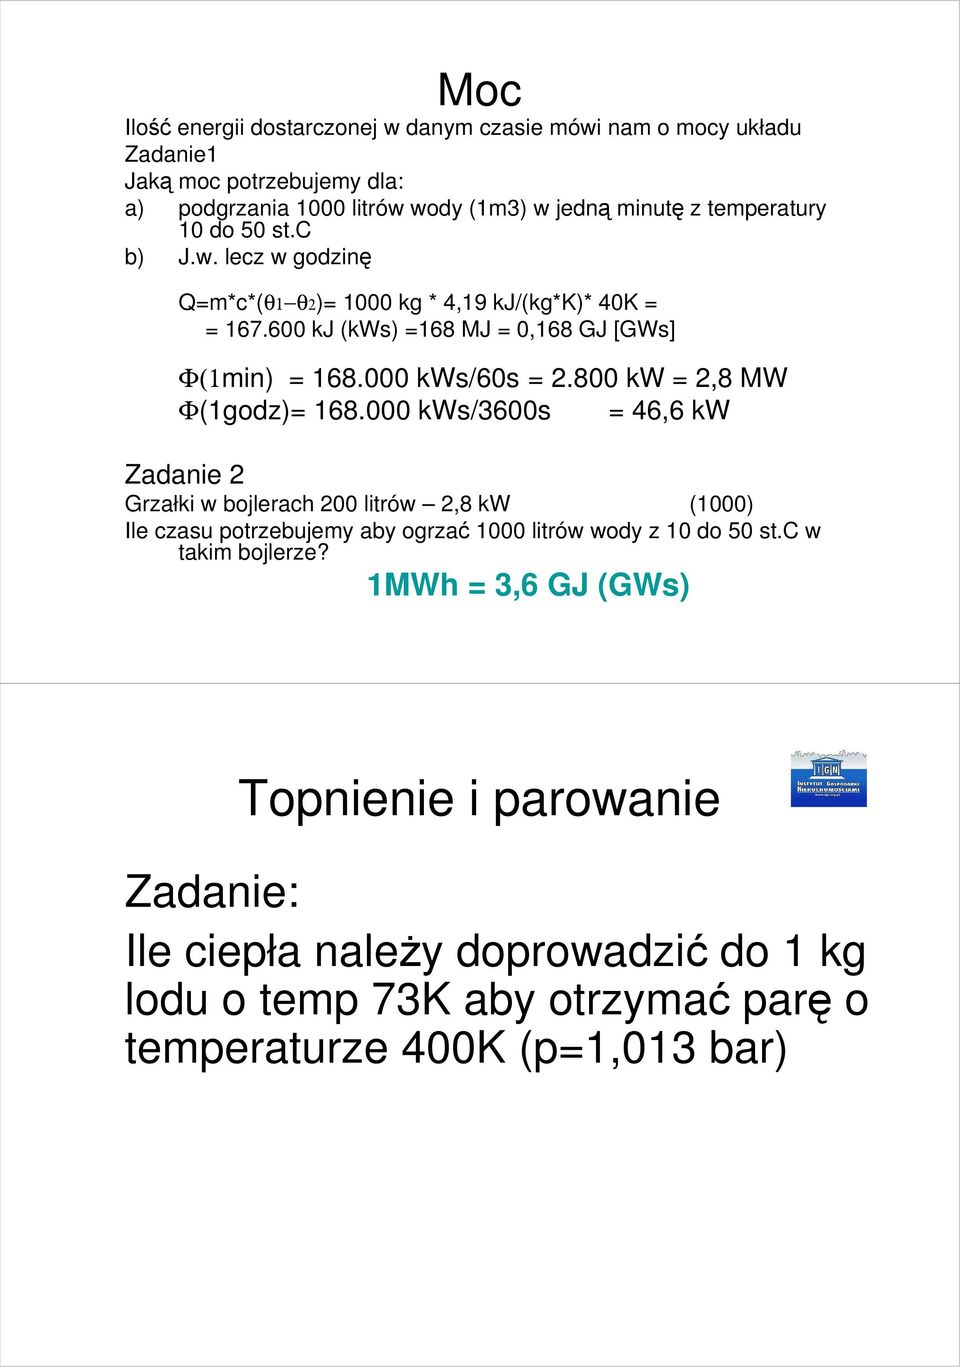 800 kw = 2,8 MW Φ(1godz)= 168.